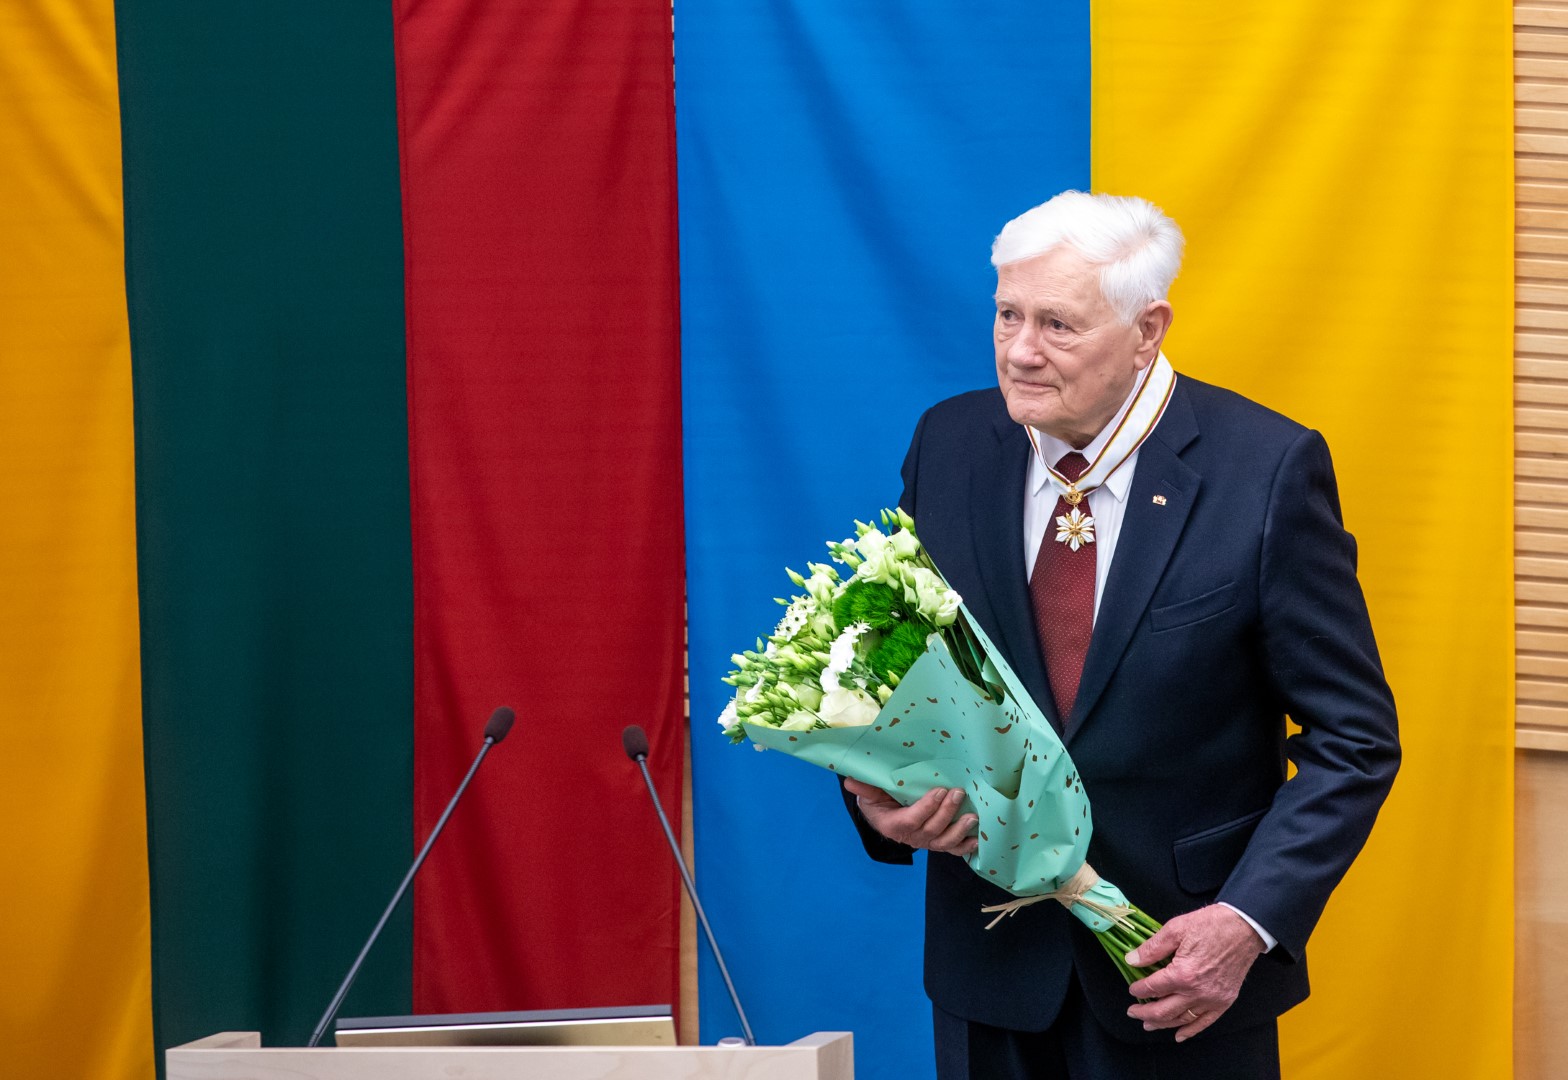 Prezidentui Valdui Adamkui antradienį iškilmingai įteiktas Seimo apdovanojimas – Aleksandro Stulginskio žvaigždė.